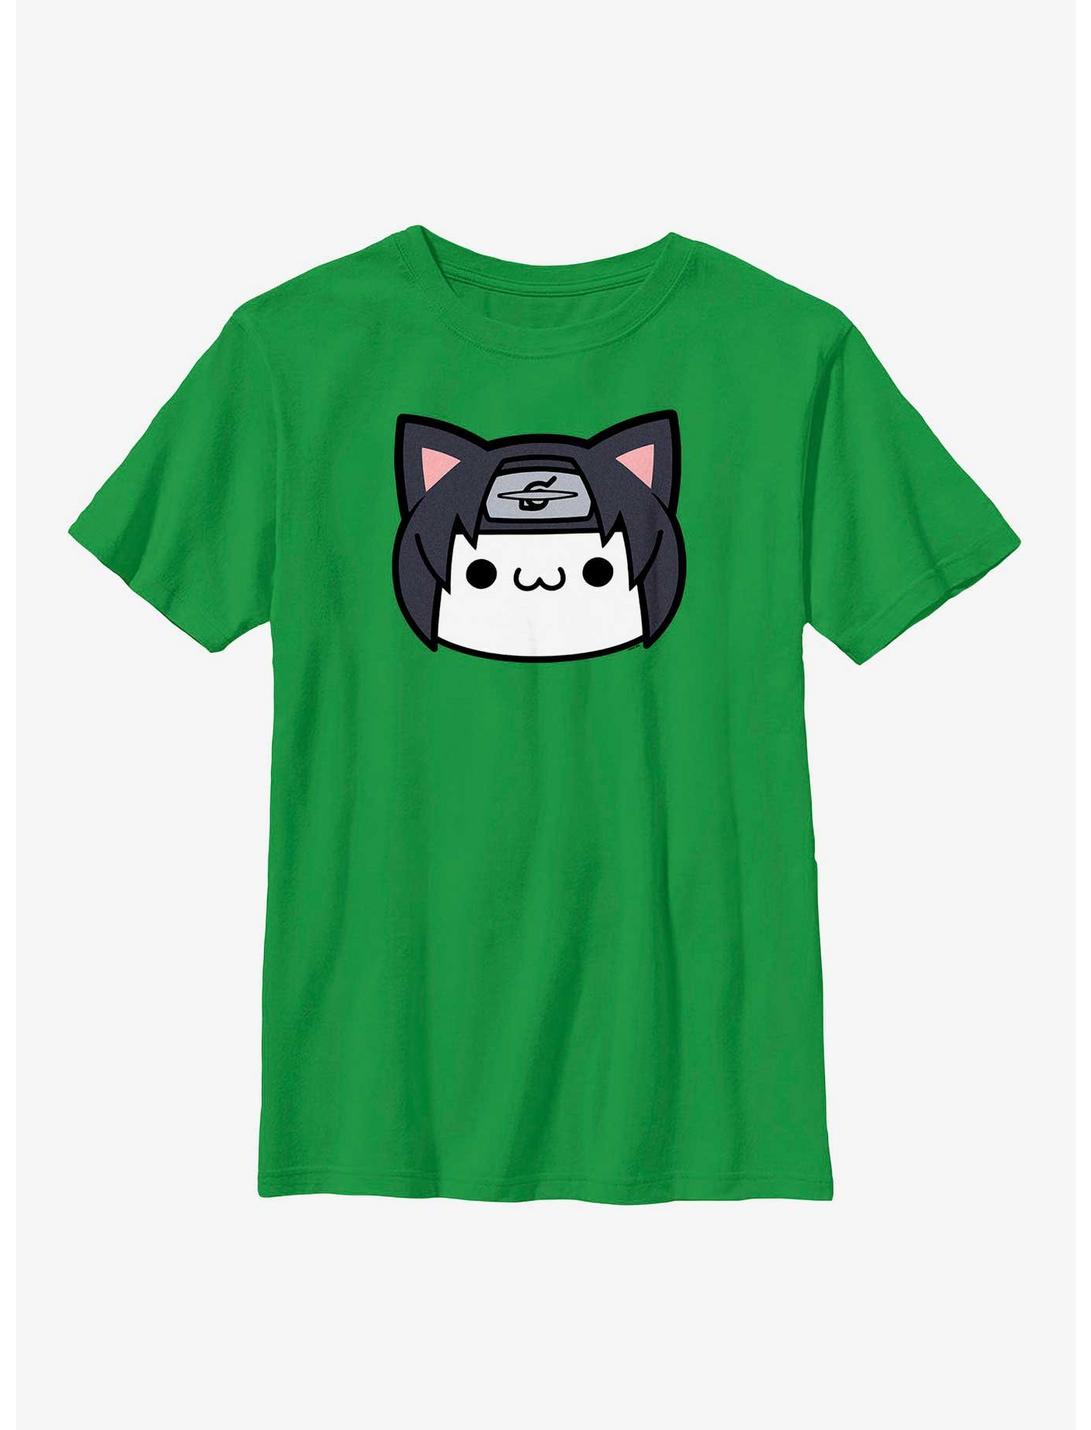 Naruto Itachi Cat Face Youth T-Shirt, KELLY, hi-res